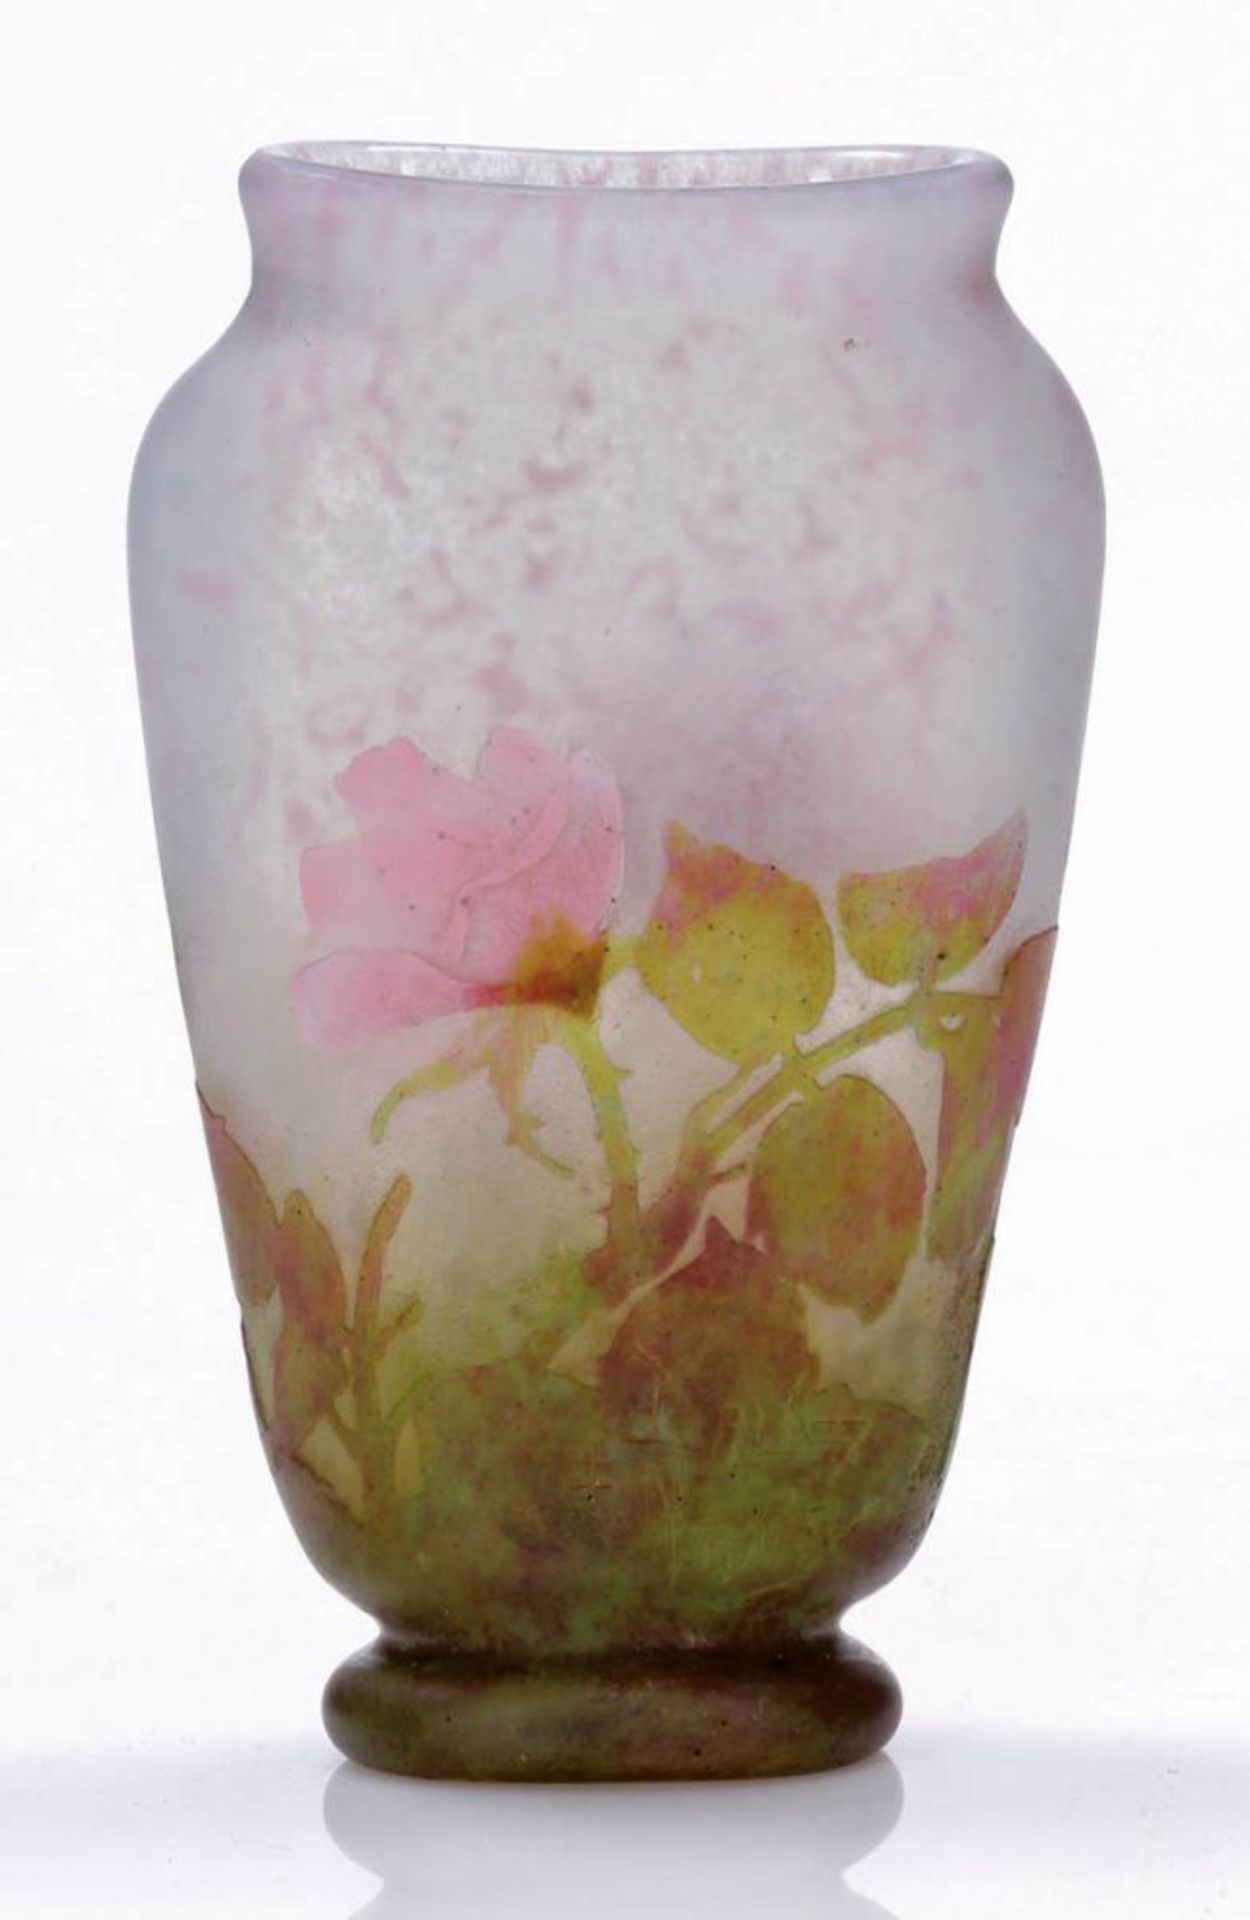 Abgeflachte Vase - Rosenblüten und Blätter Daum Fréres & Cie, Verreries de Nancy um 1900-1905.